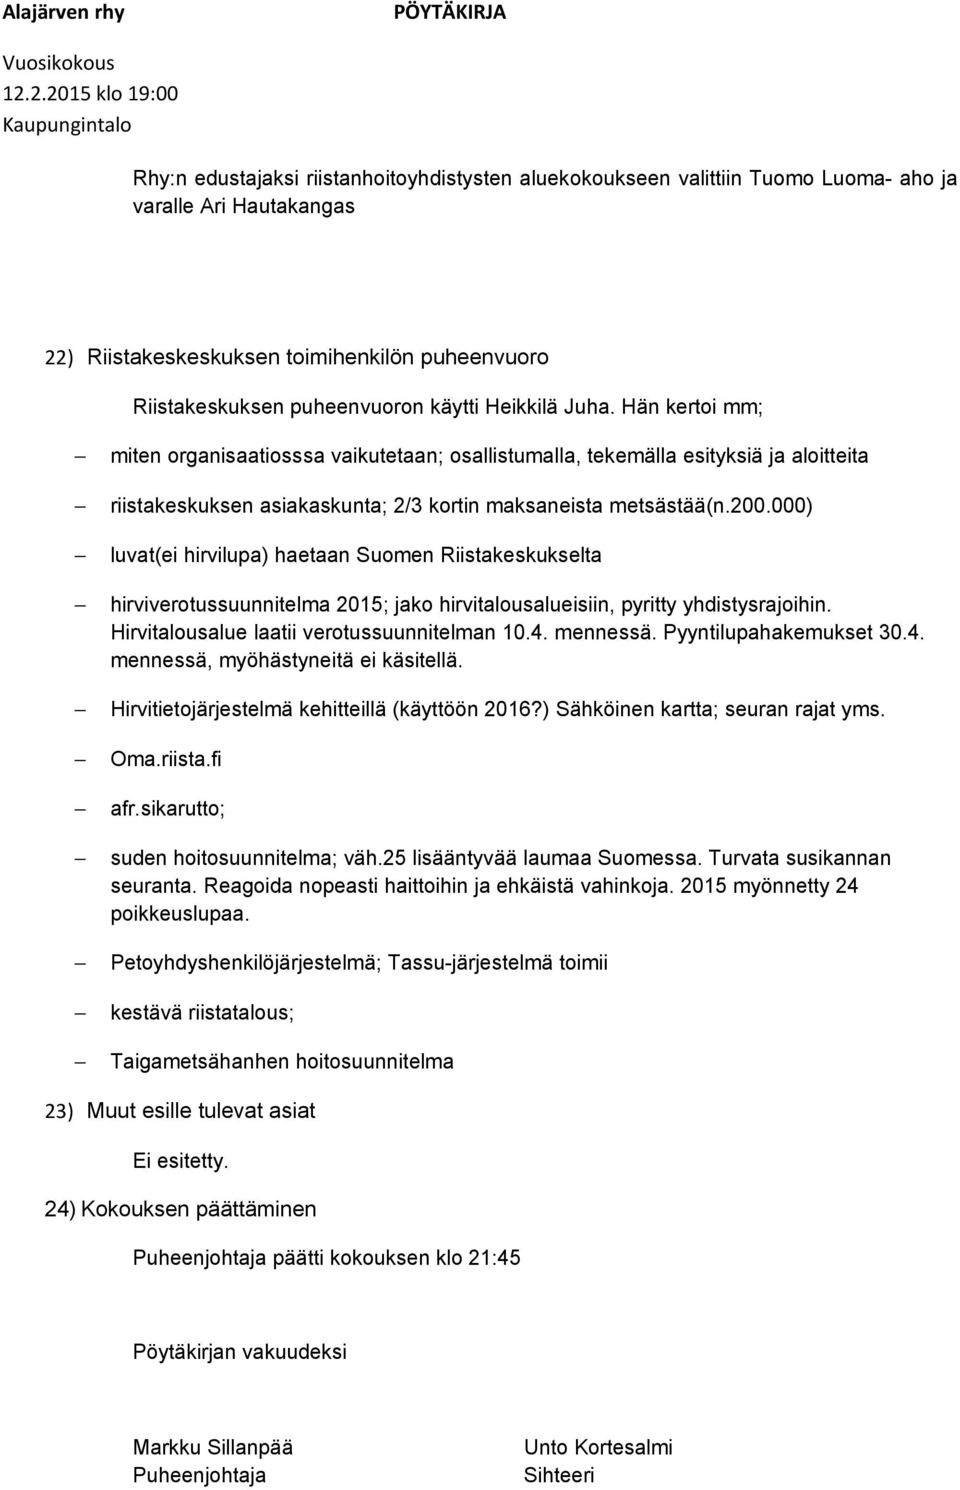 000) luvat(ei hirvilupa) haetaan Suomen Riistakeskukselta hirviverotussuunnitelma 2015; jako hirvitalousalueisiin, pyritty yhdistysrajoihin. Hirvitalousalue laatii verotussuunnitelman 10.4. mennessä.